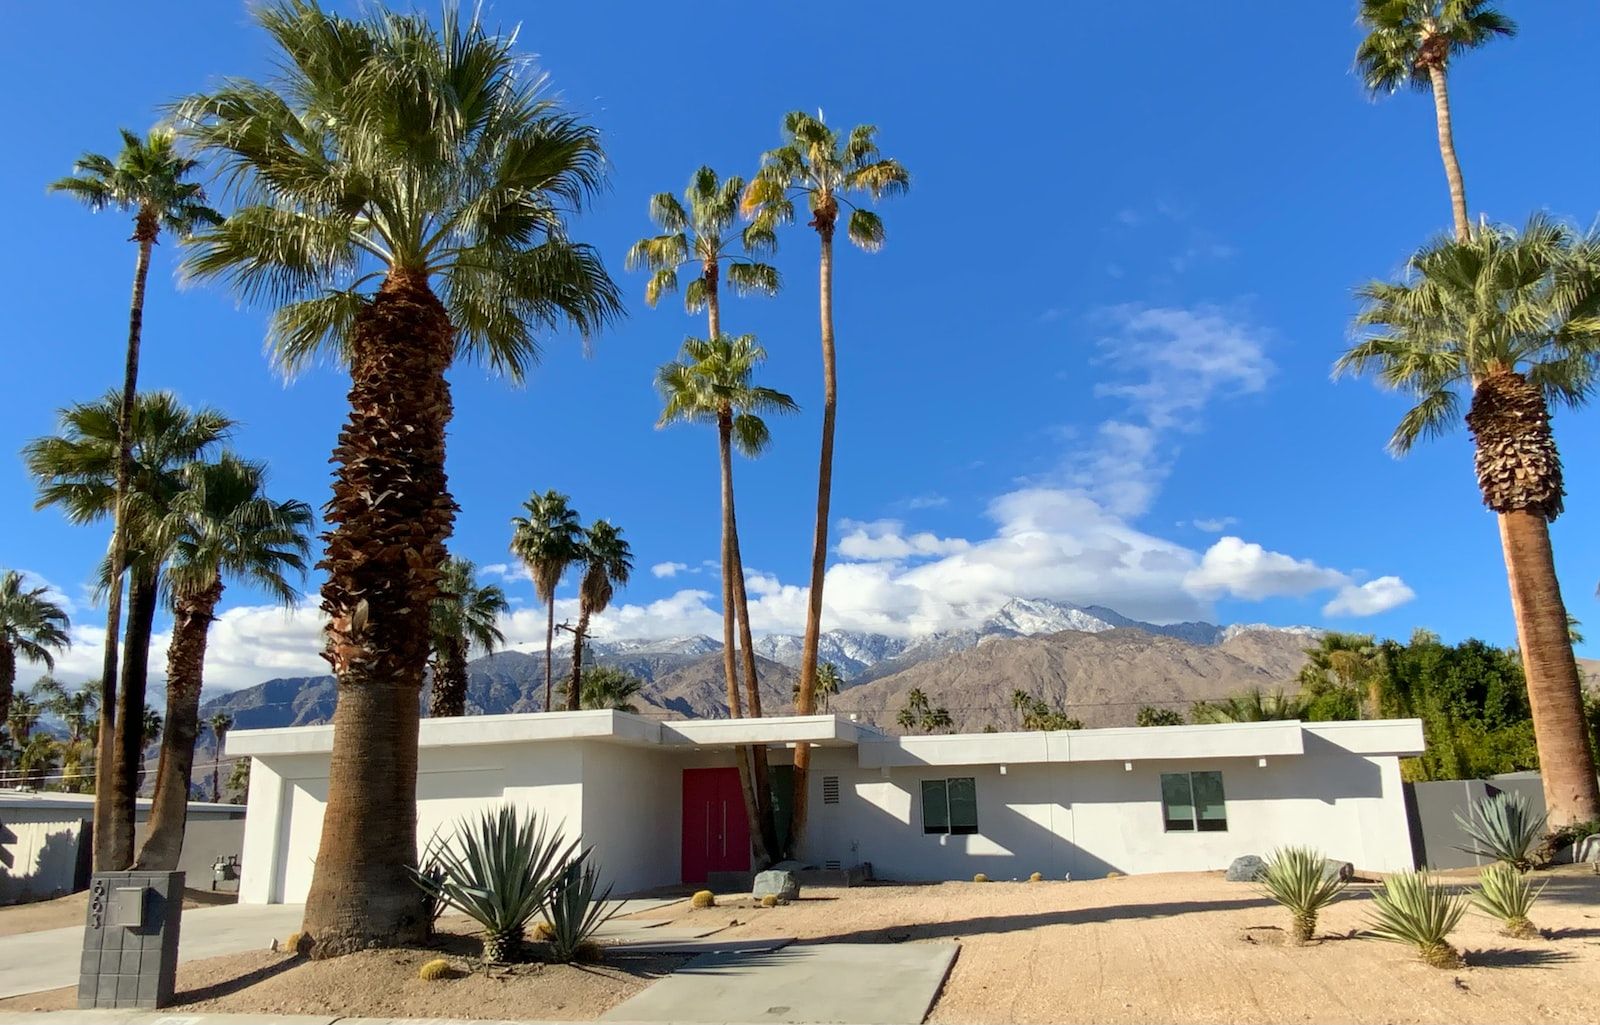 Maison de style moderne mid-century modern  en Californie avec des palmiers et des montagnes en arrière-plan